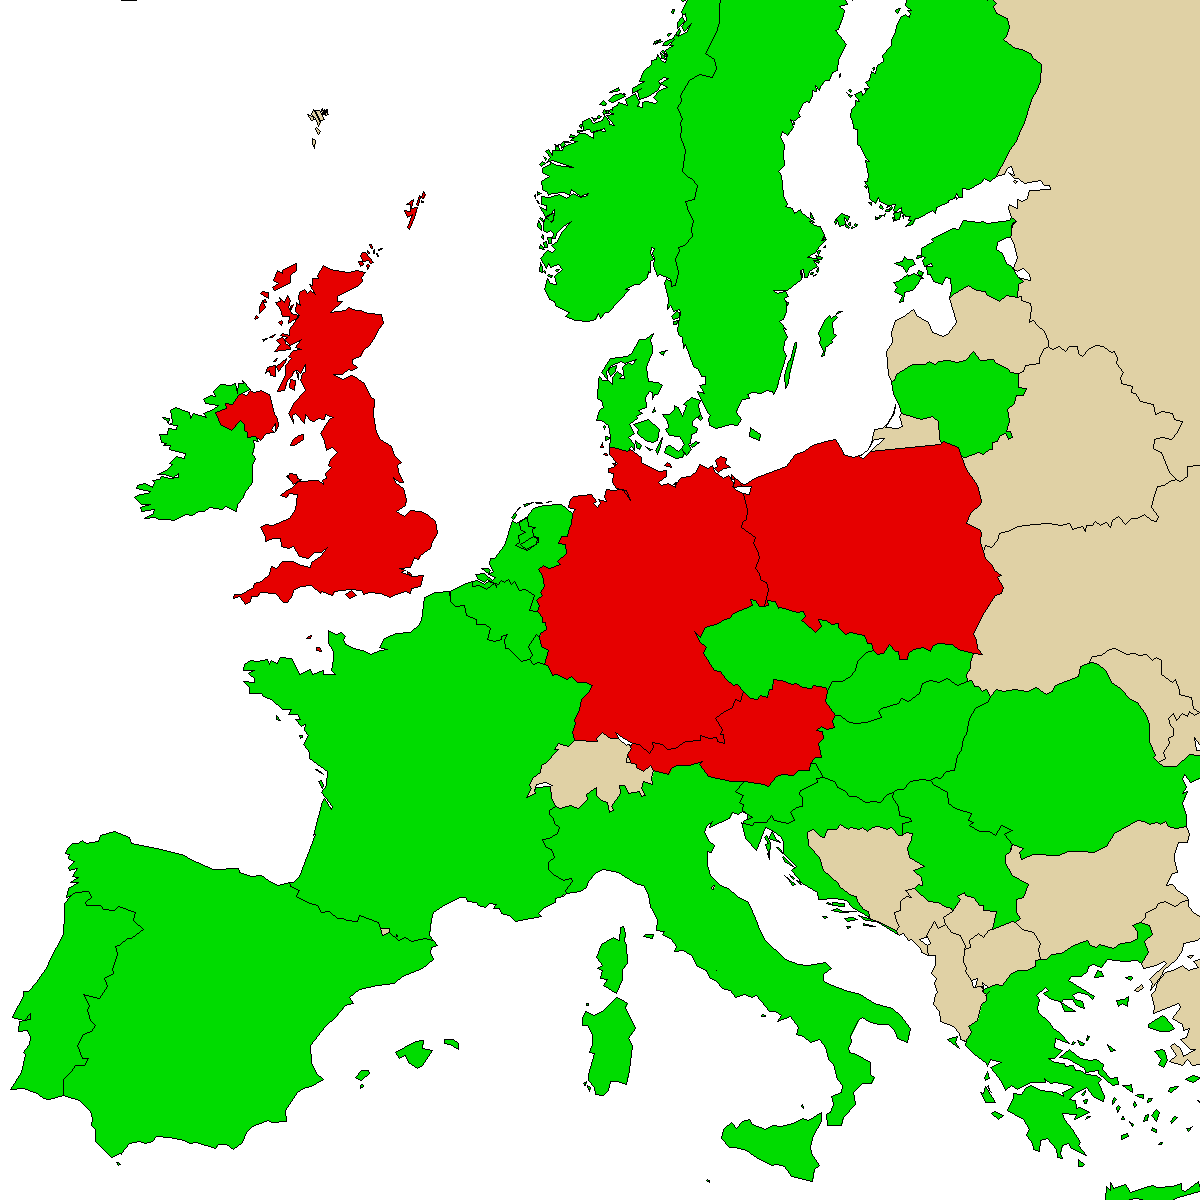 juridisk informationskarta för vår produkt Mephedrene, grön är länder utan förbud, röd med förbud, grå är okänd